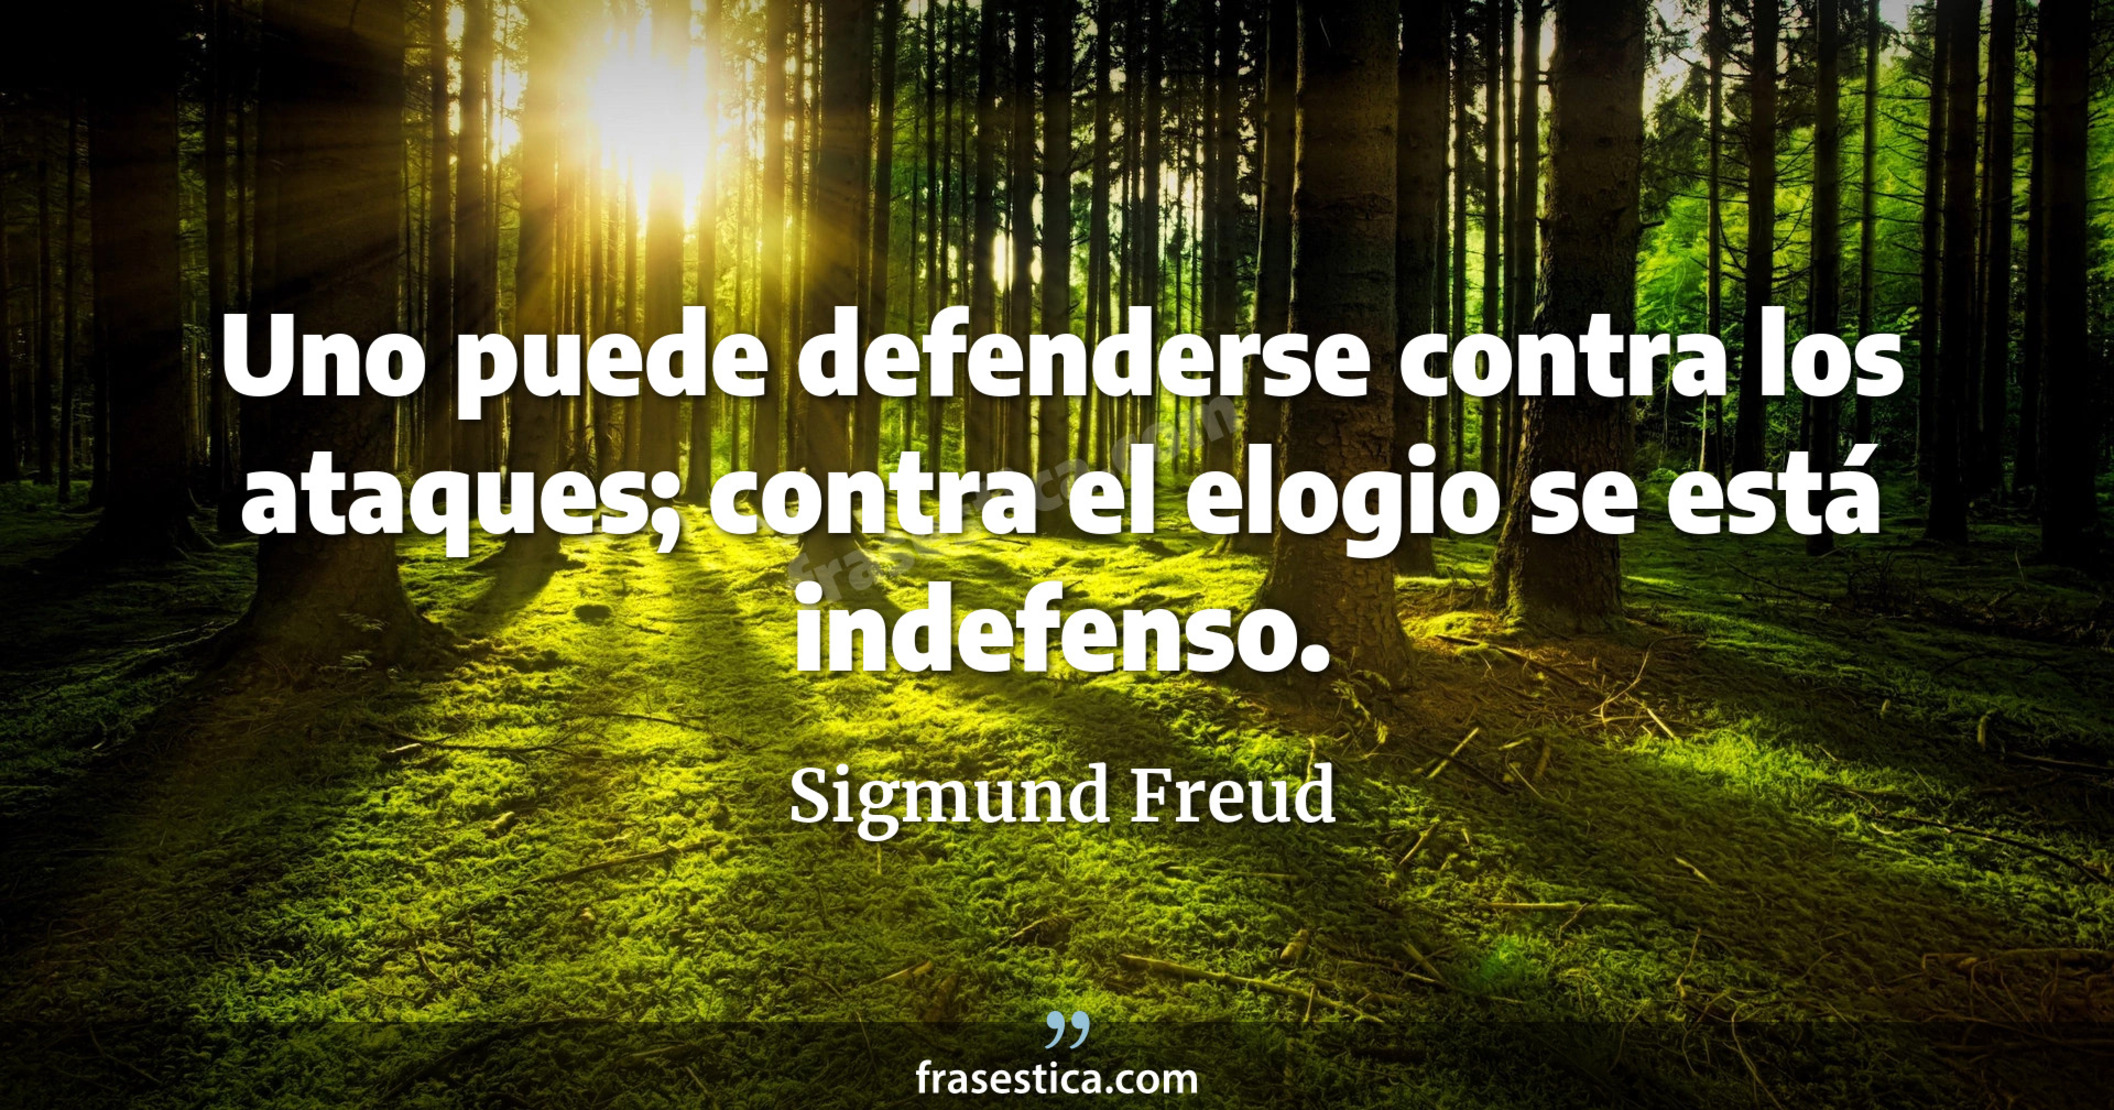 Uno puede defenderse contra los ataques; contra el elogio se está indefenso. - Sigmund Freud